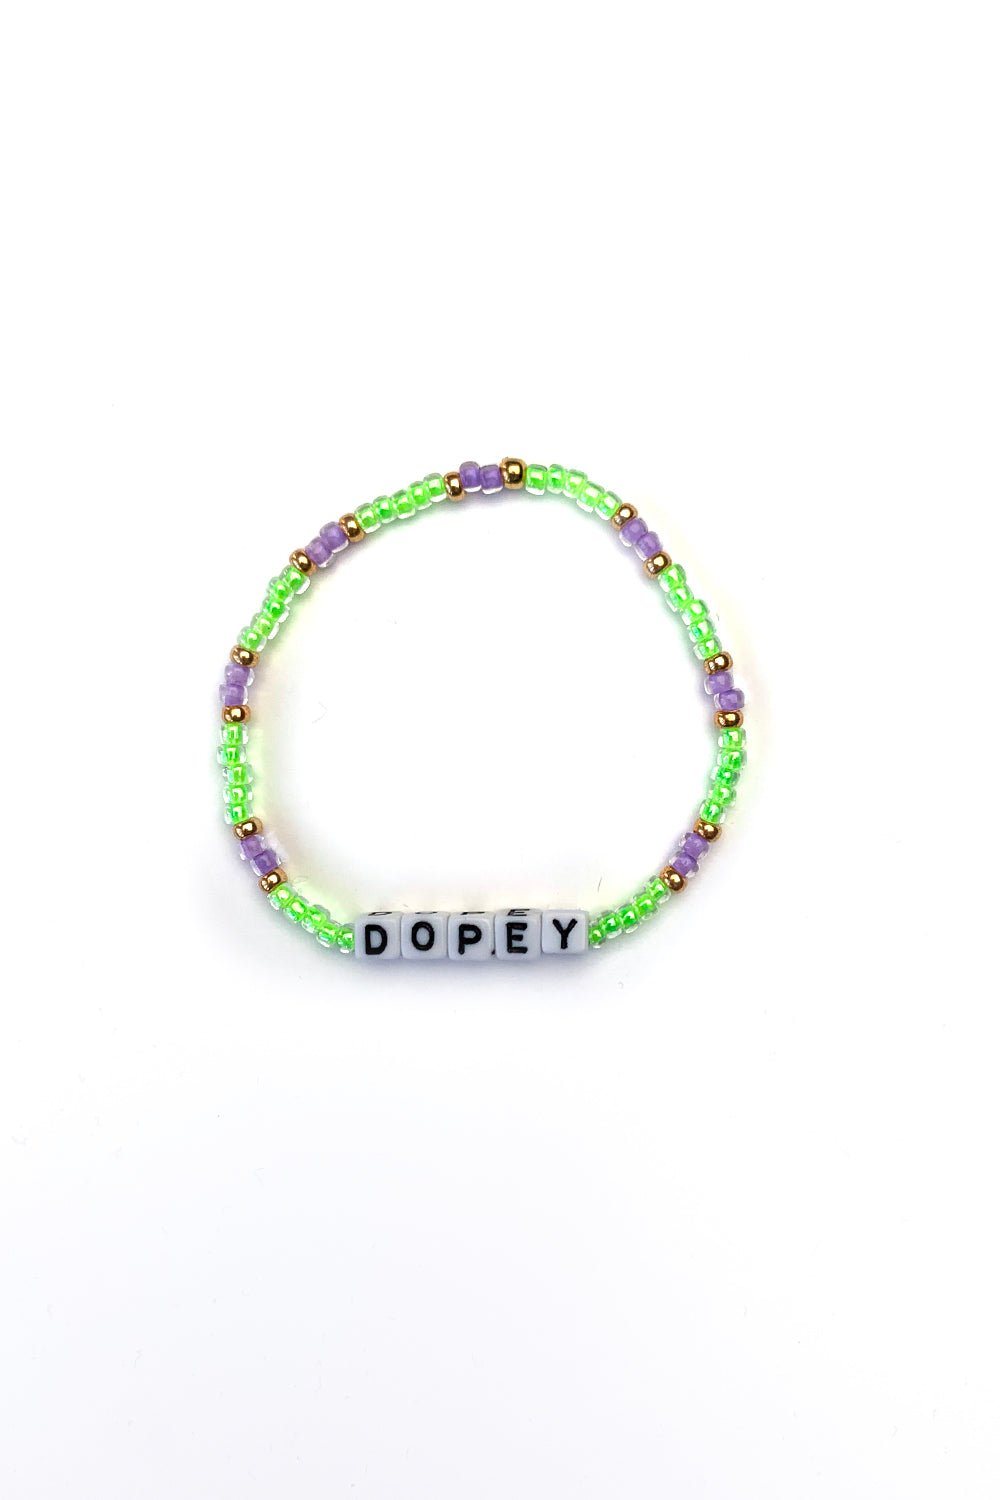 Sarah Marie Design Studio Bracelet 6.25" / Dope Single Dopey Disney Inspired Bracelet